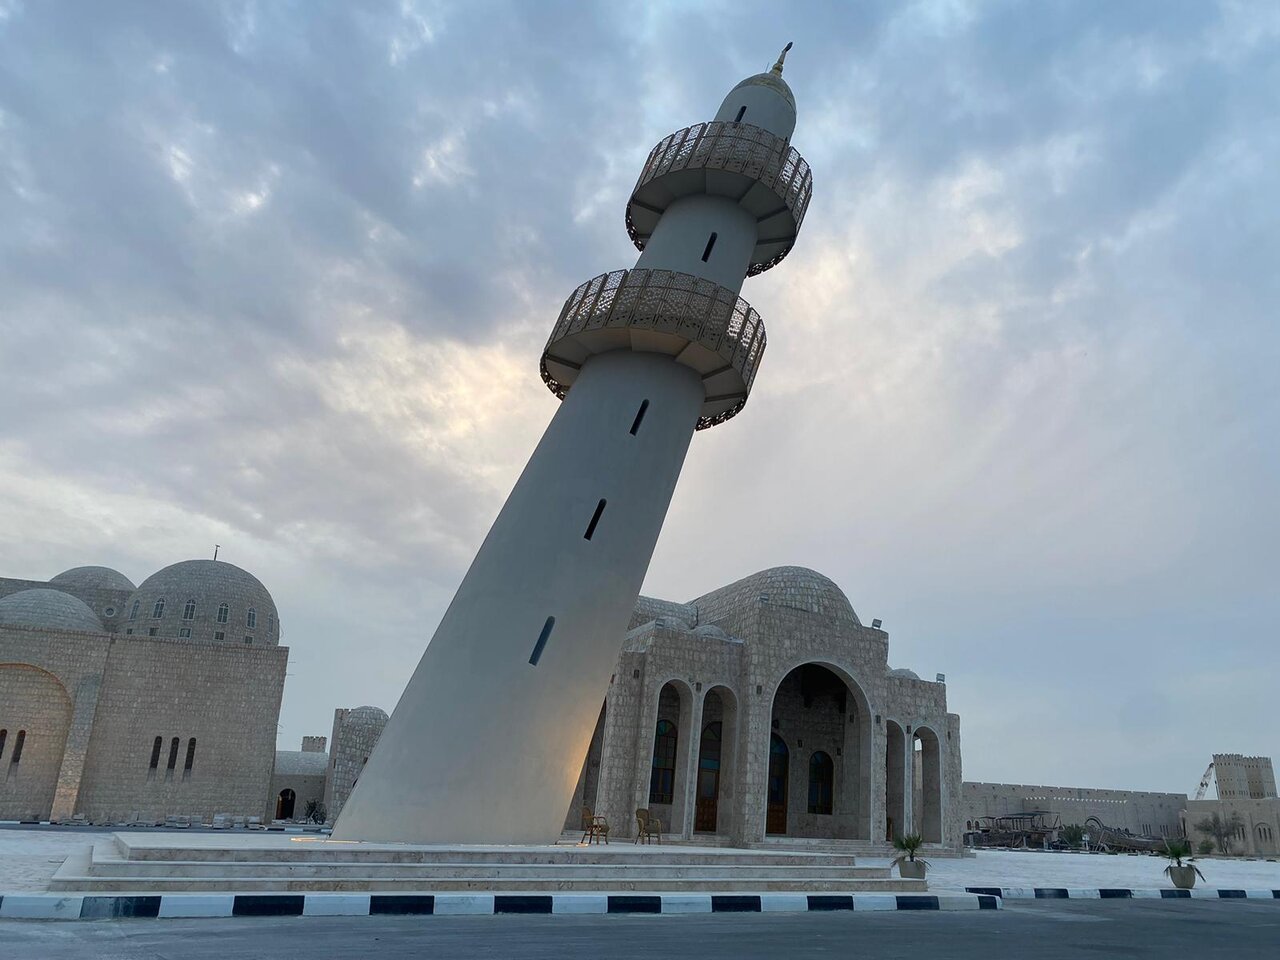 عکسی از معماری کج و مناره شیبدار یک مسجد